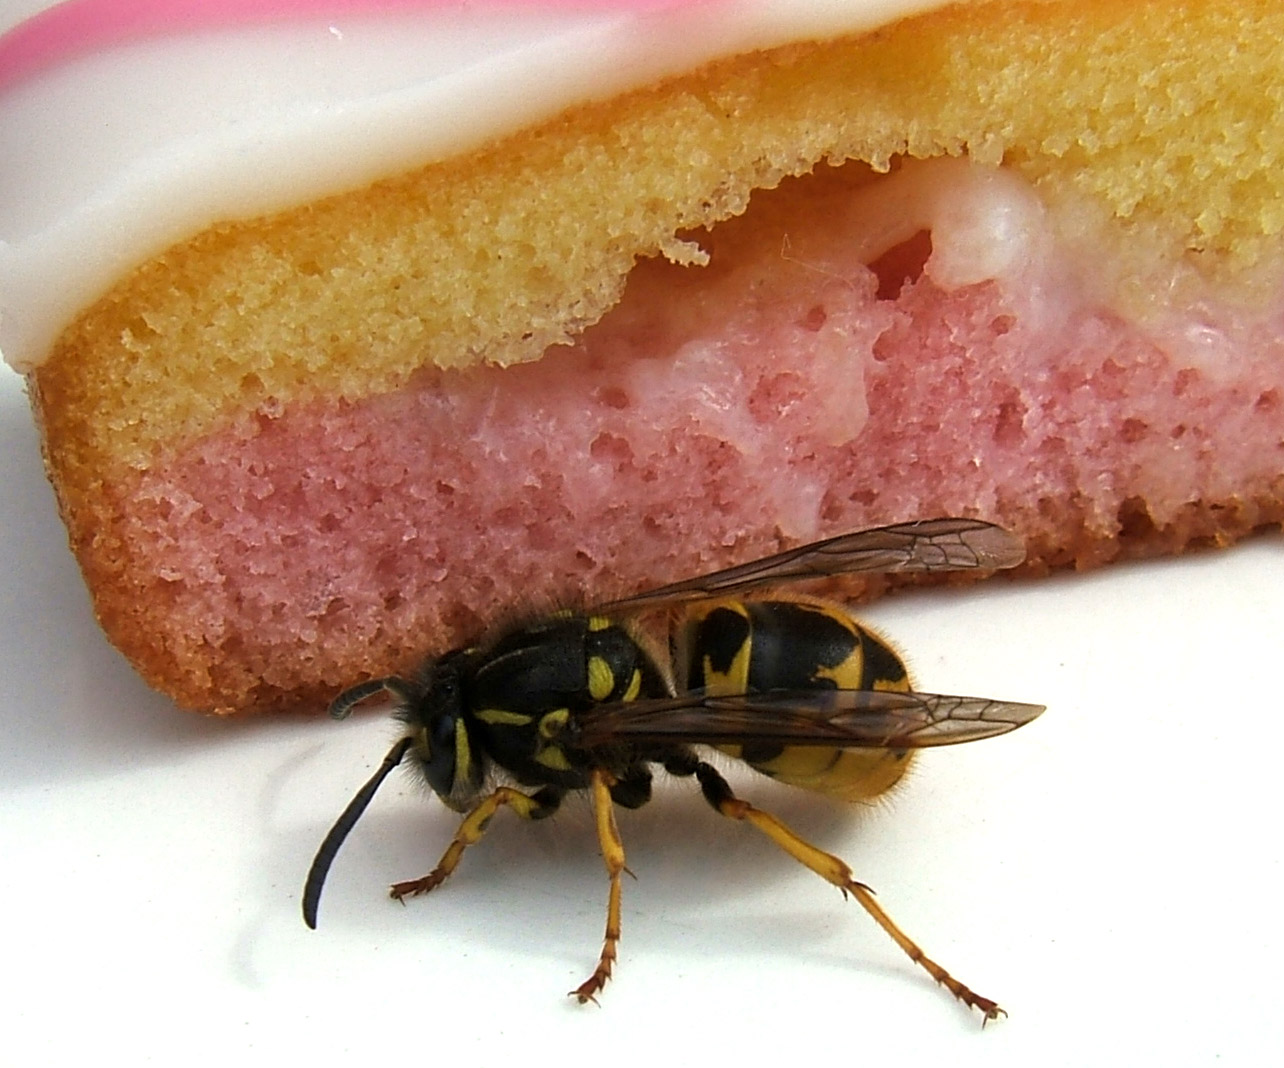 Wasps around food.